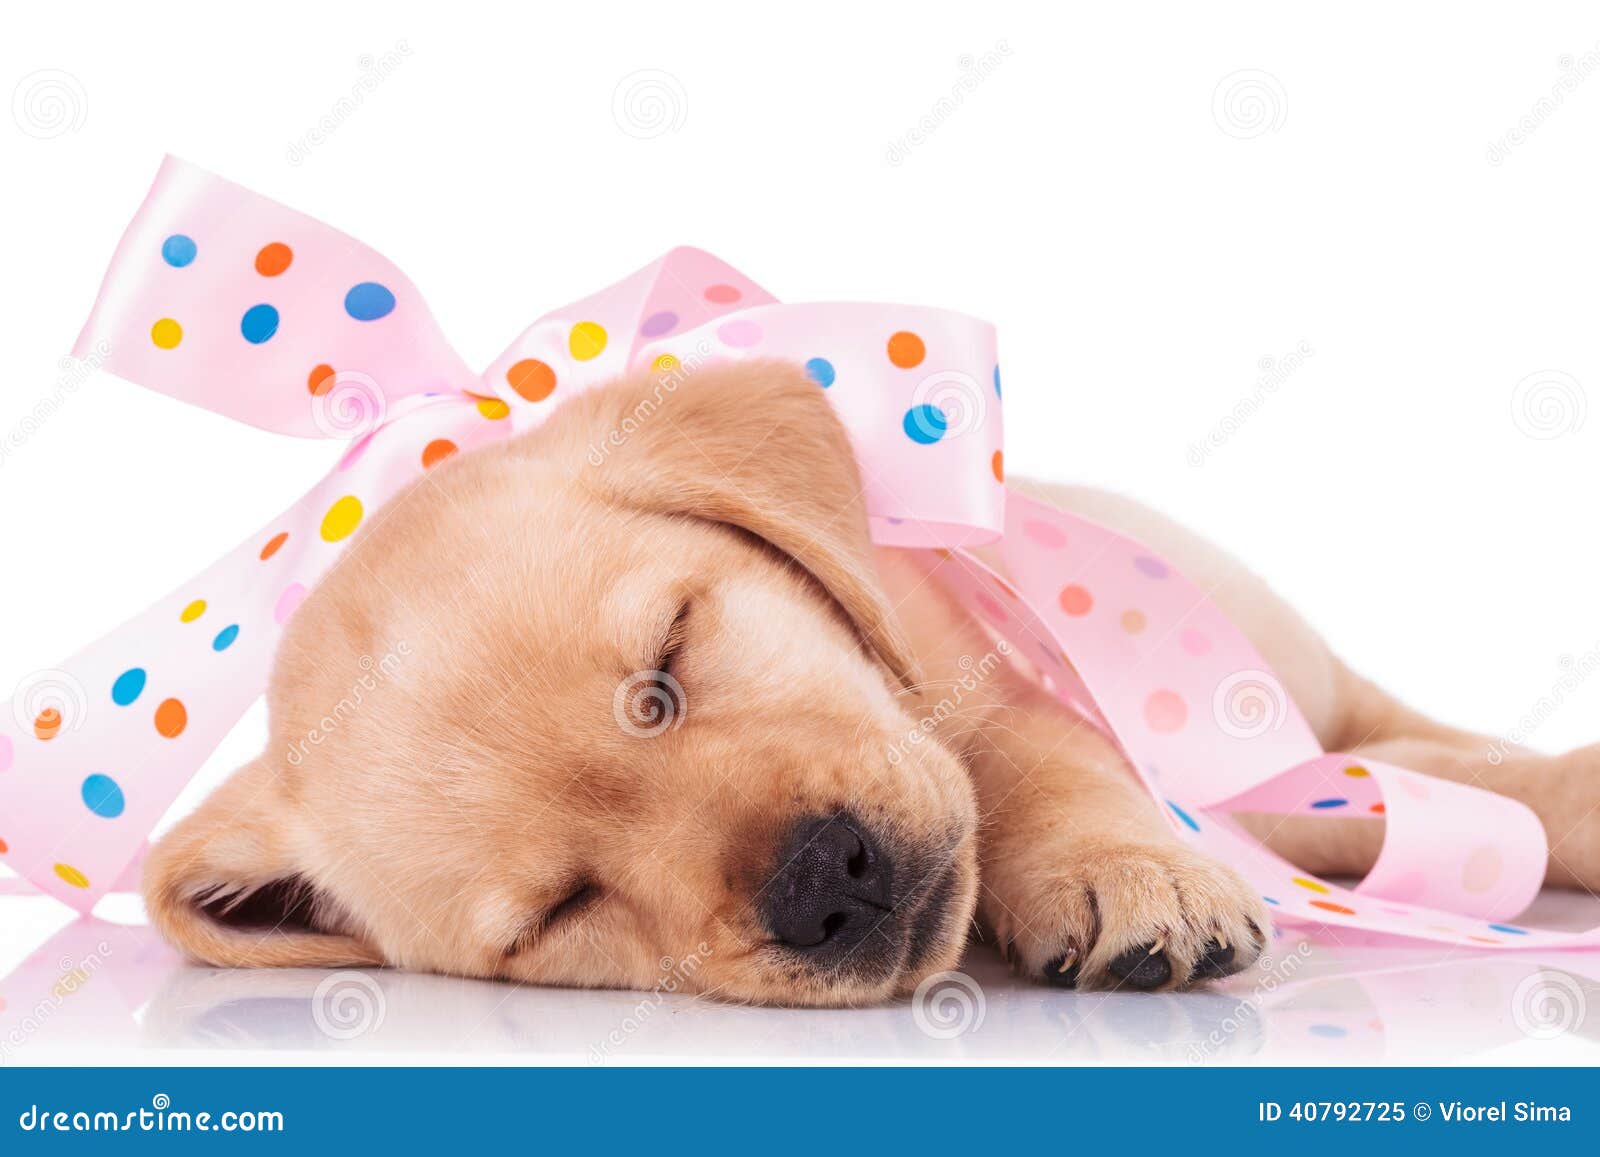 El perro de perrito se envuelve en un arco rosado como presente. El perro de perrito del labrador retriever el dormir se envuelve en un arco rosado como presente en el fondo blanco